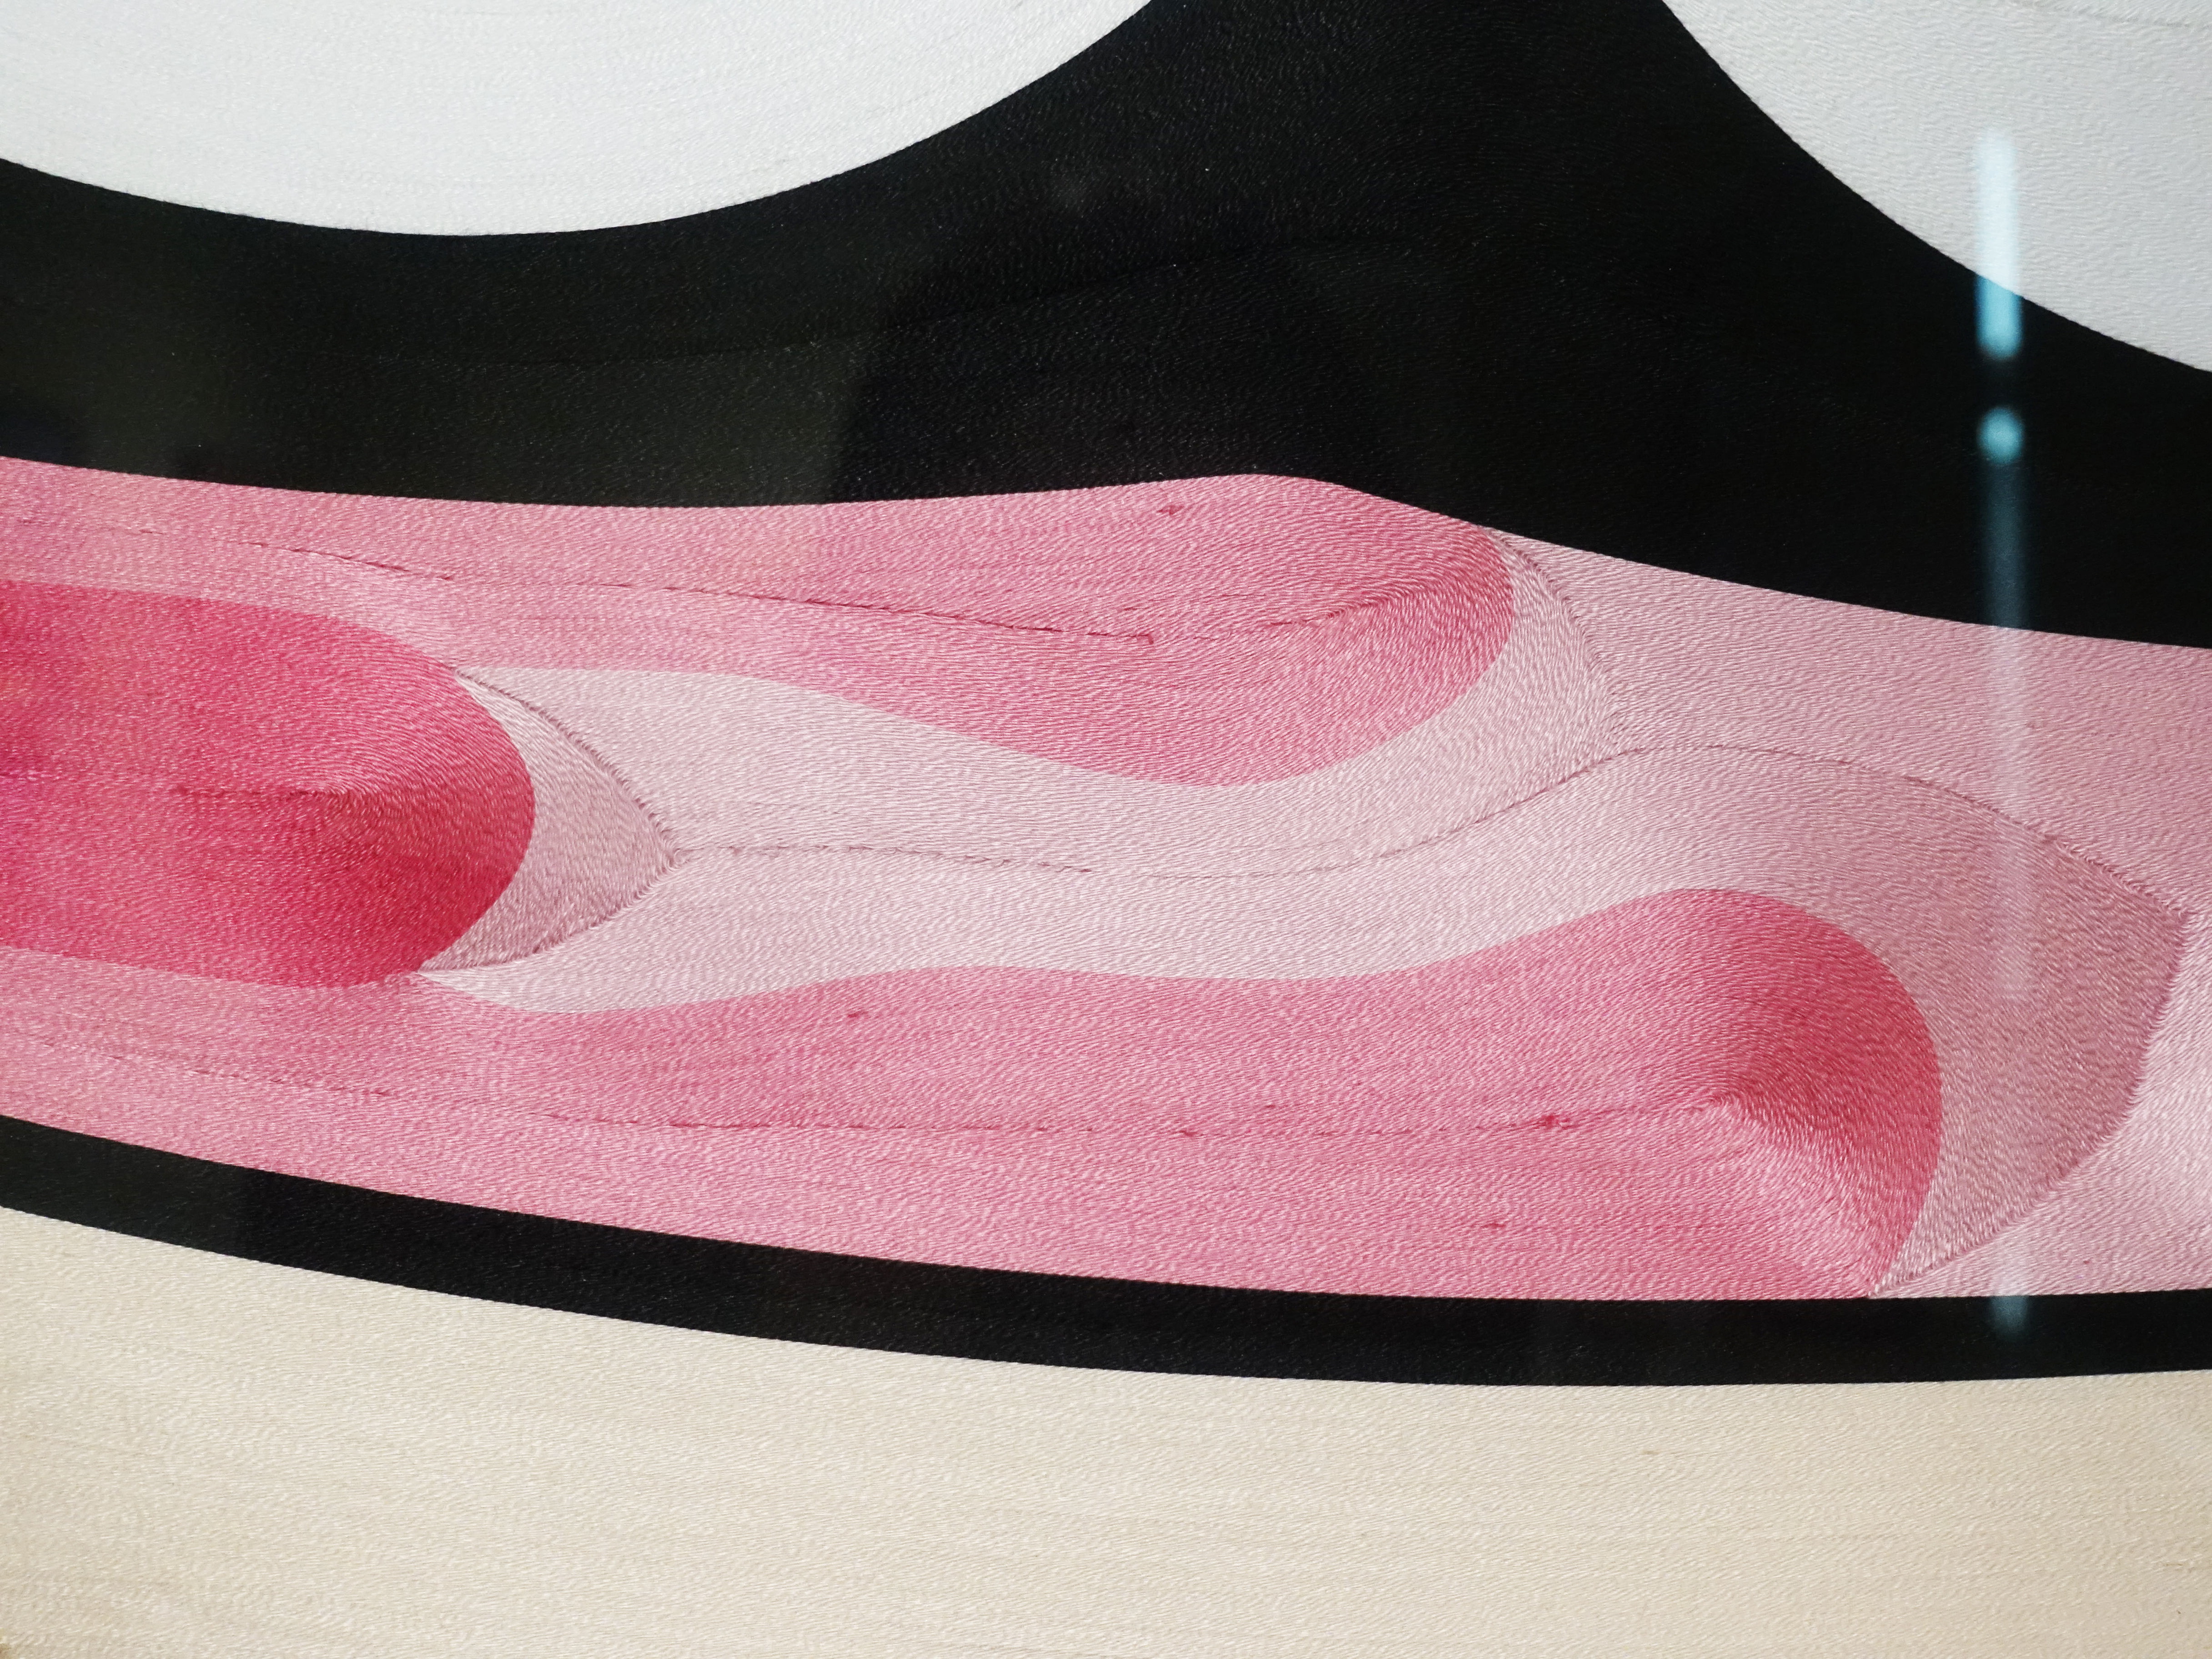 蔡忠和，《粉紅迷彩超人》細節，80 x 100 cm，點線畫，2018。